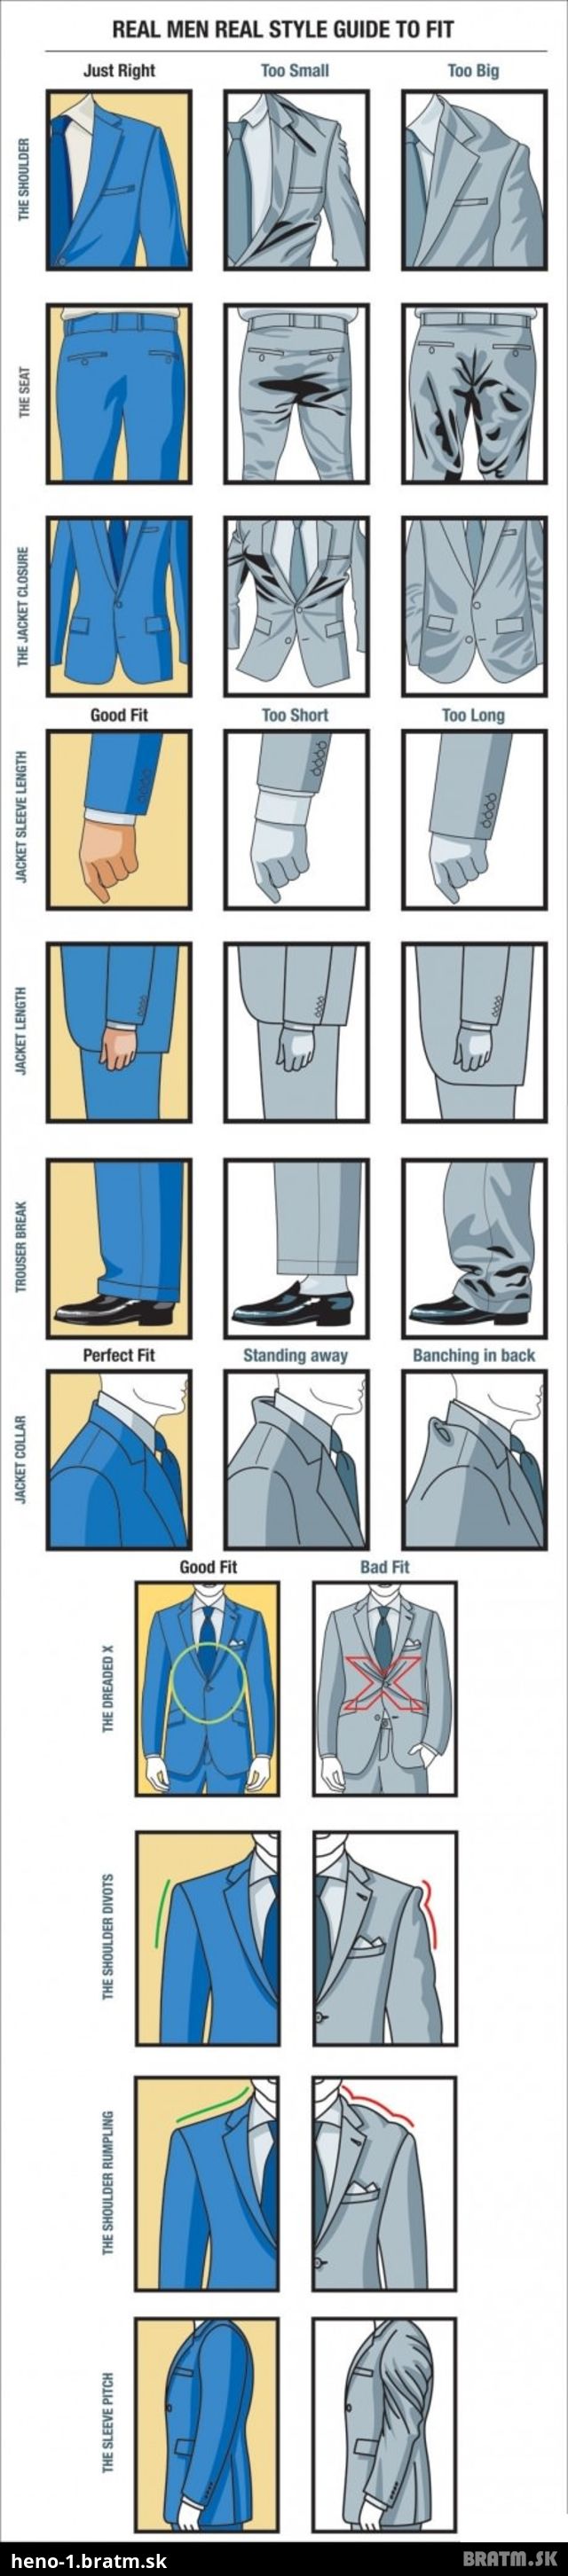 Návod pre mužov, ako sa správne zmestiť do obleku :)